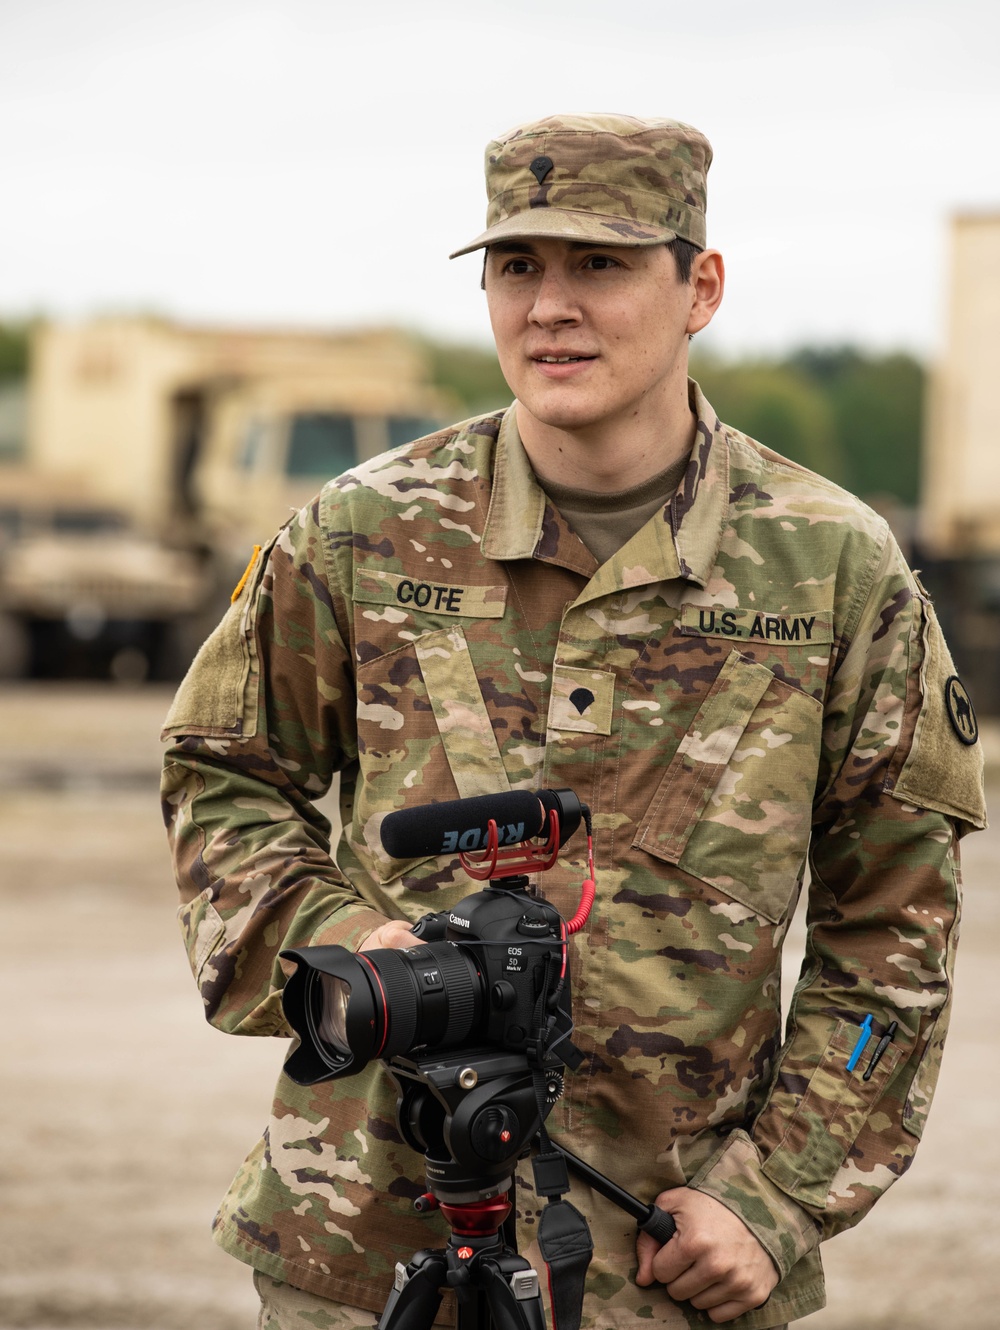 U.S. Army Public Affairs Specialist Training